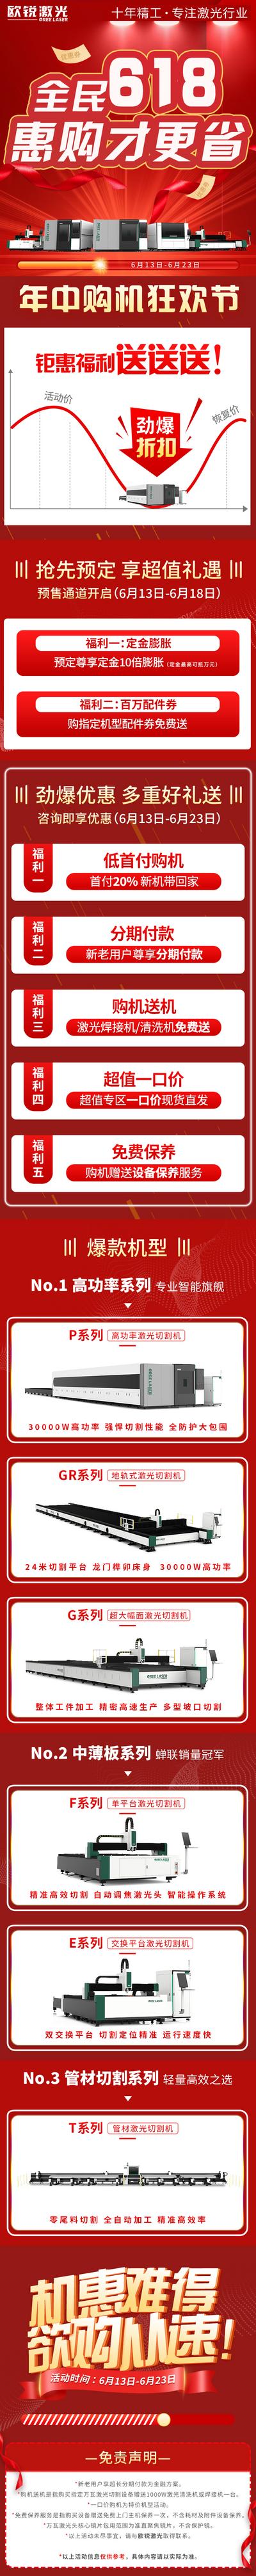 南门网 广告 海报 电商 长图 大促 促销 618 活动 电器